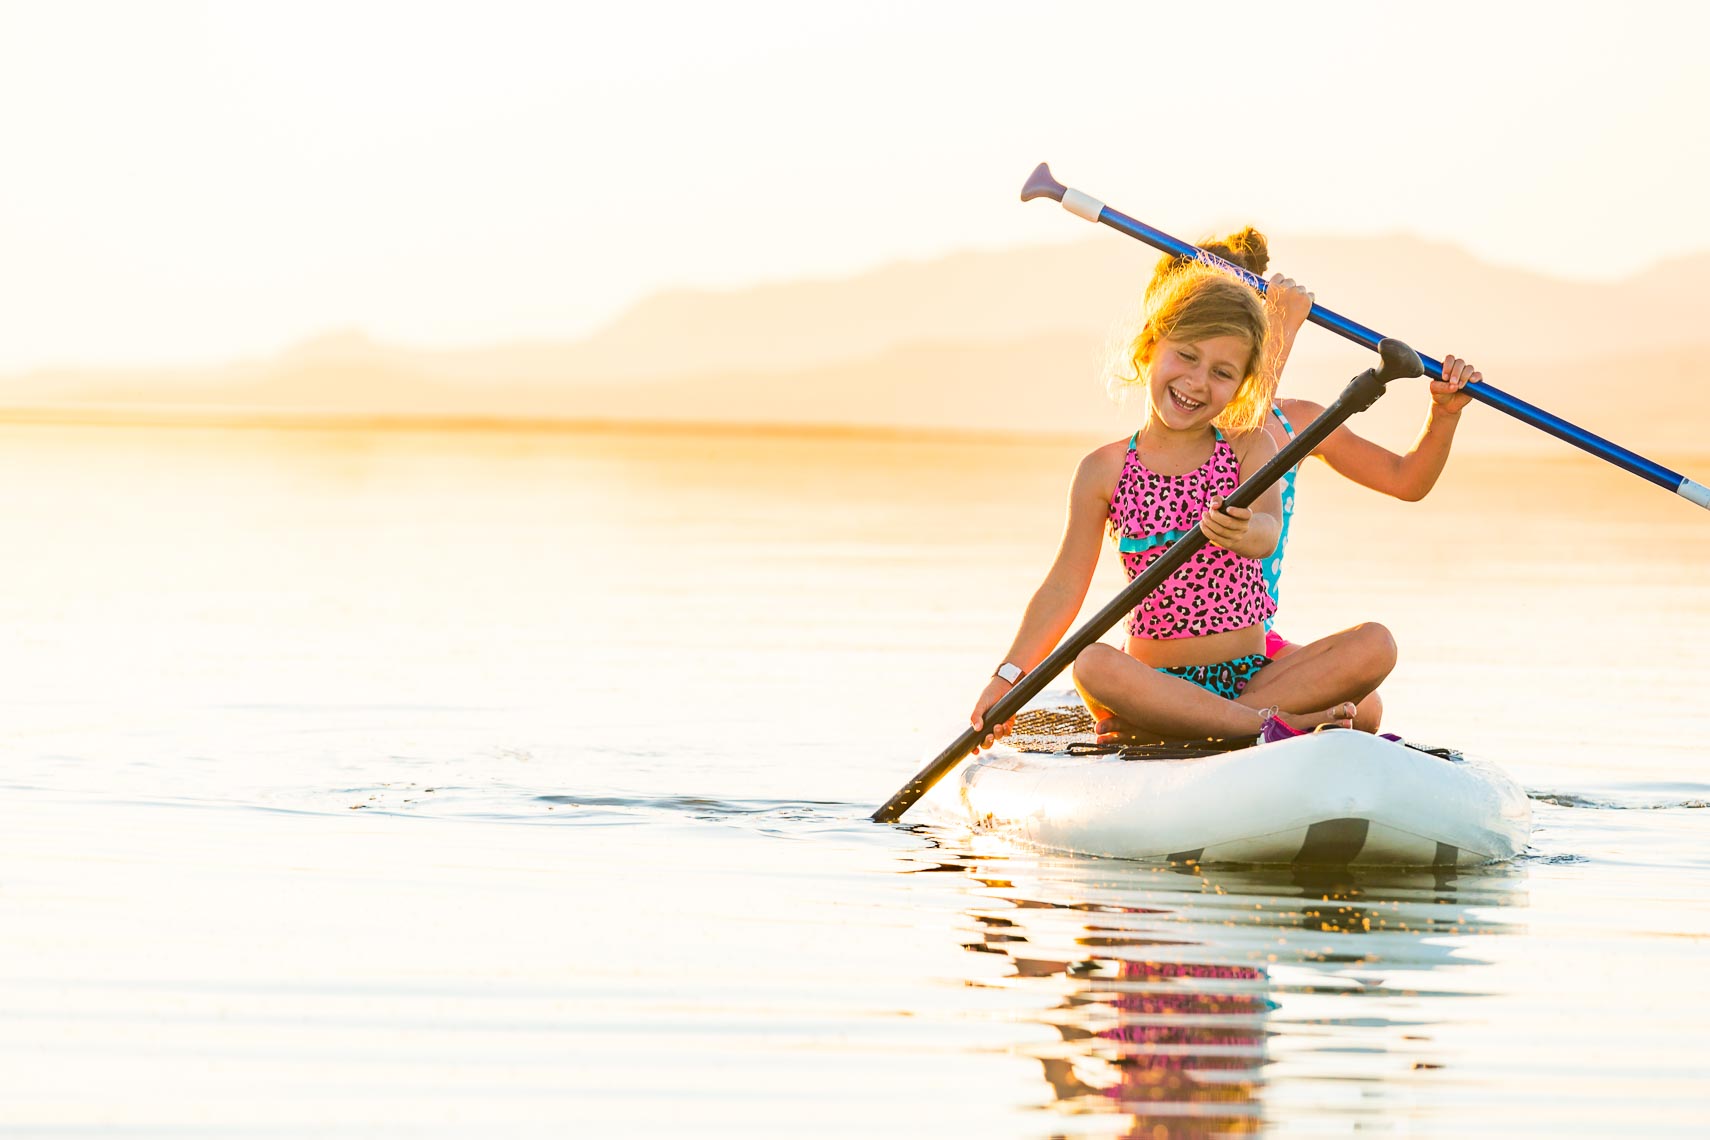 Utah Great Salt Lake Paddle Boarding | Michael DeYoung